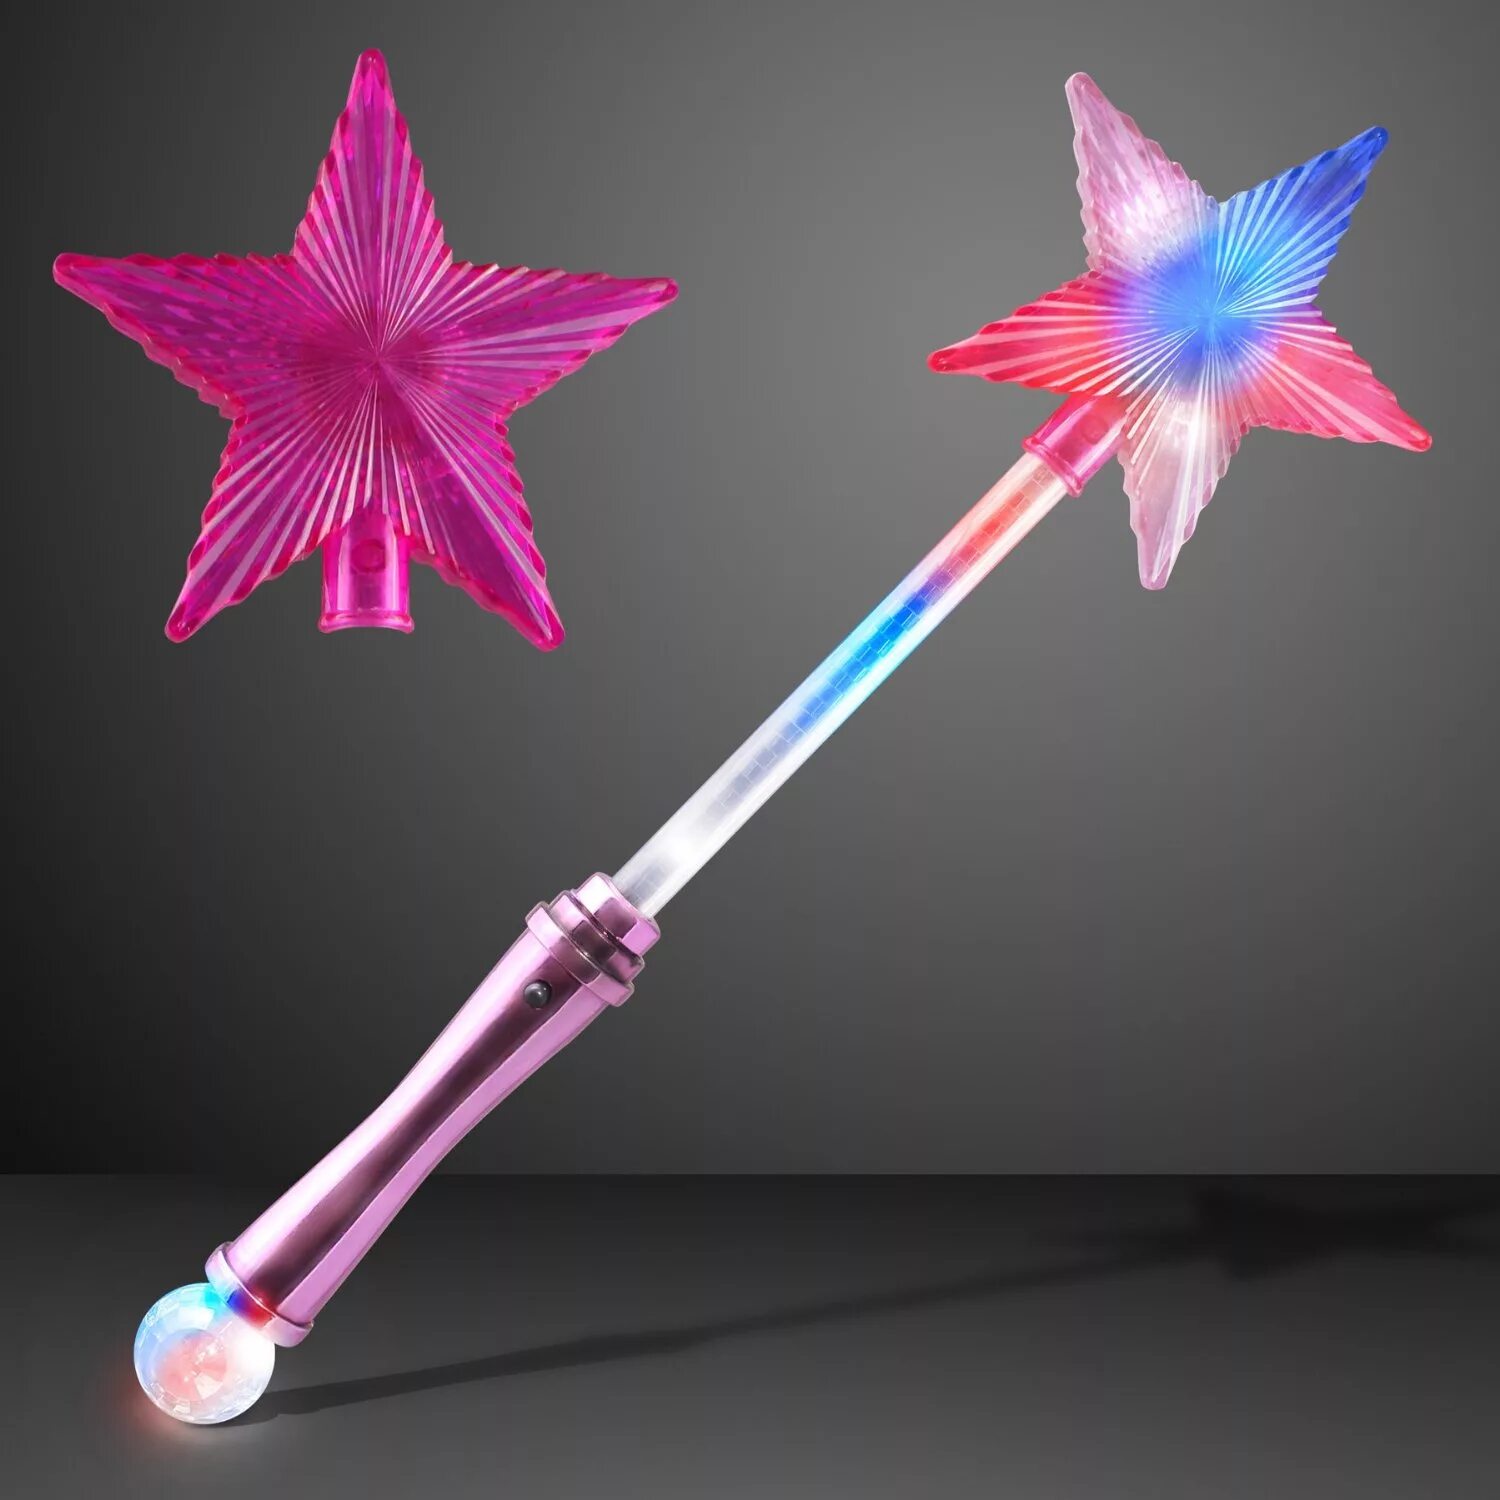 New magic wand speed. Игрушка Волшебная палочка "Magic Wand" y2072102. Волшебная палочка вероники34356. Волшебный палочка Magic Wand. Волшебные палочки Тэкны.